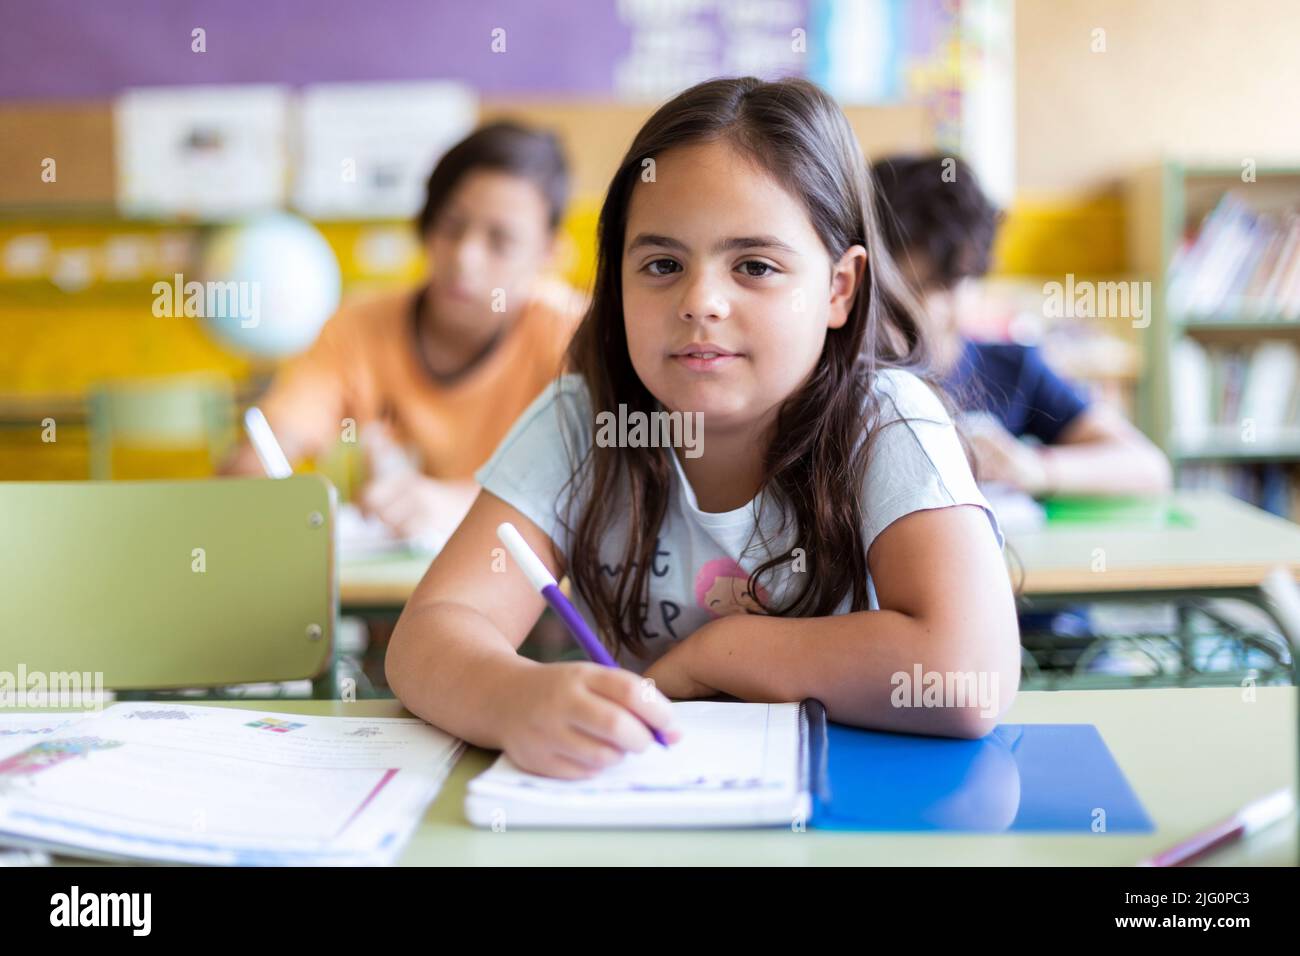 Kaukasisches kleines Mädchen, das sich im Unterricht Notizen gemacht hat. Konzept des Lernens, der Bildung und der Entwicklung im Kinderalter. Zurück zur Schule. Stockfoto